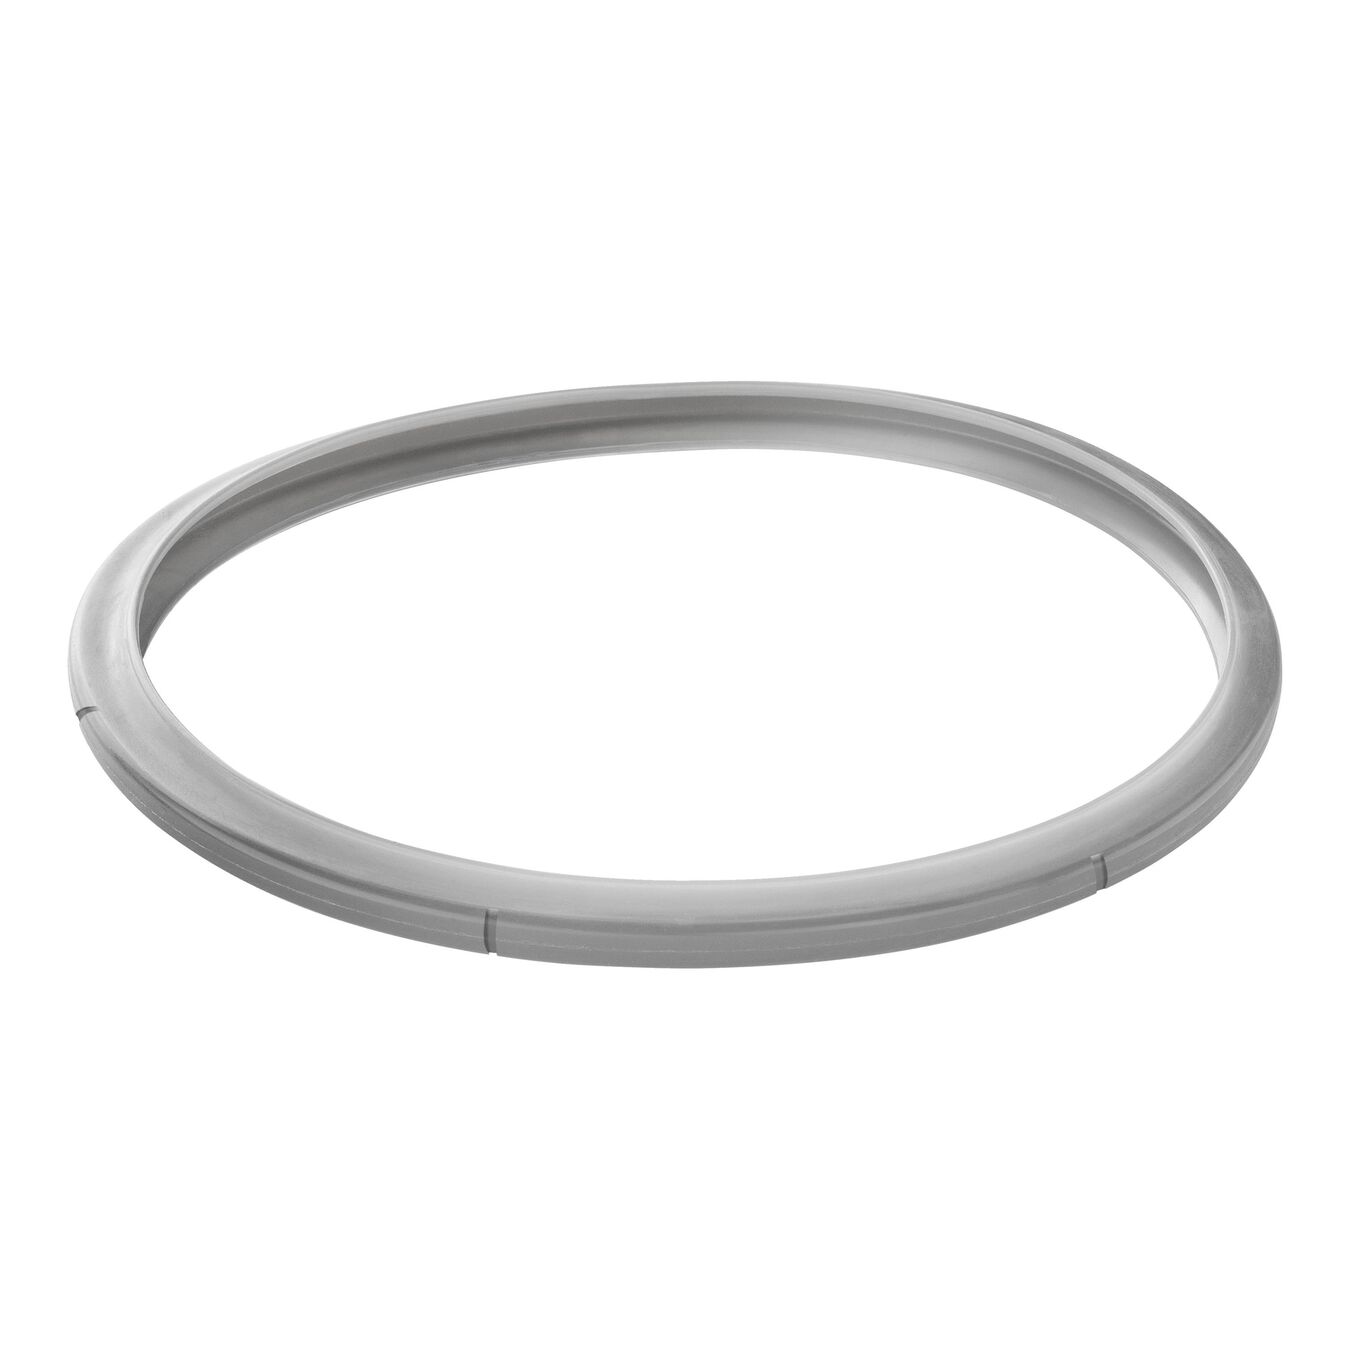 22 cm Silicone Sealing ring,,large 1